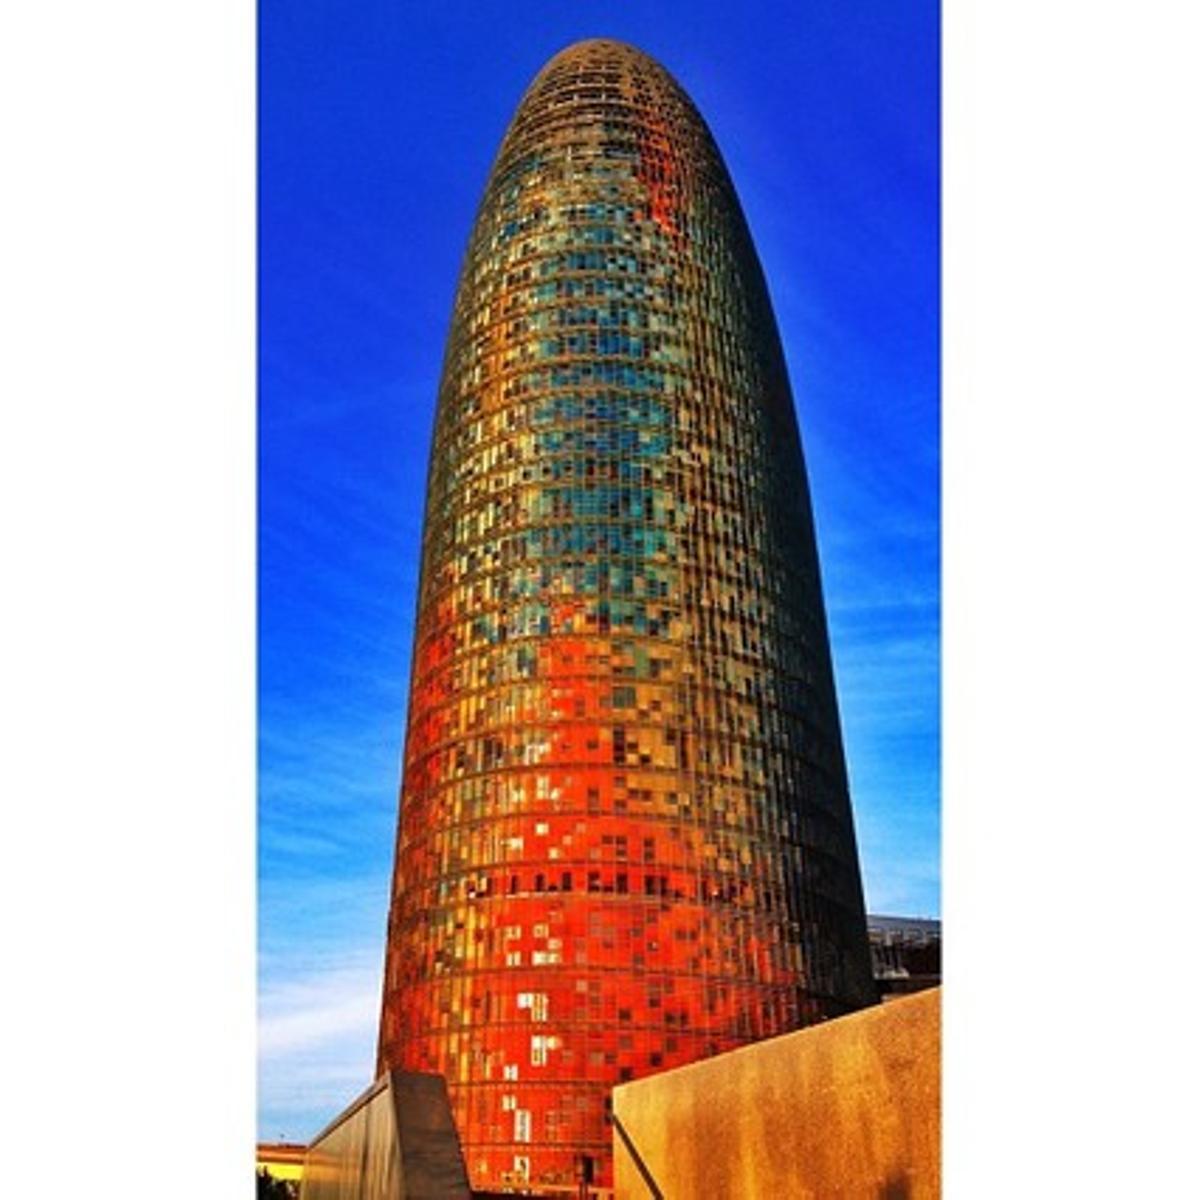 La Torre Agbar amb la seva pell acolorida que contrasta amb el blau del cel.